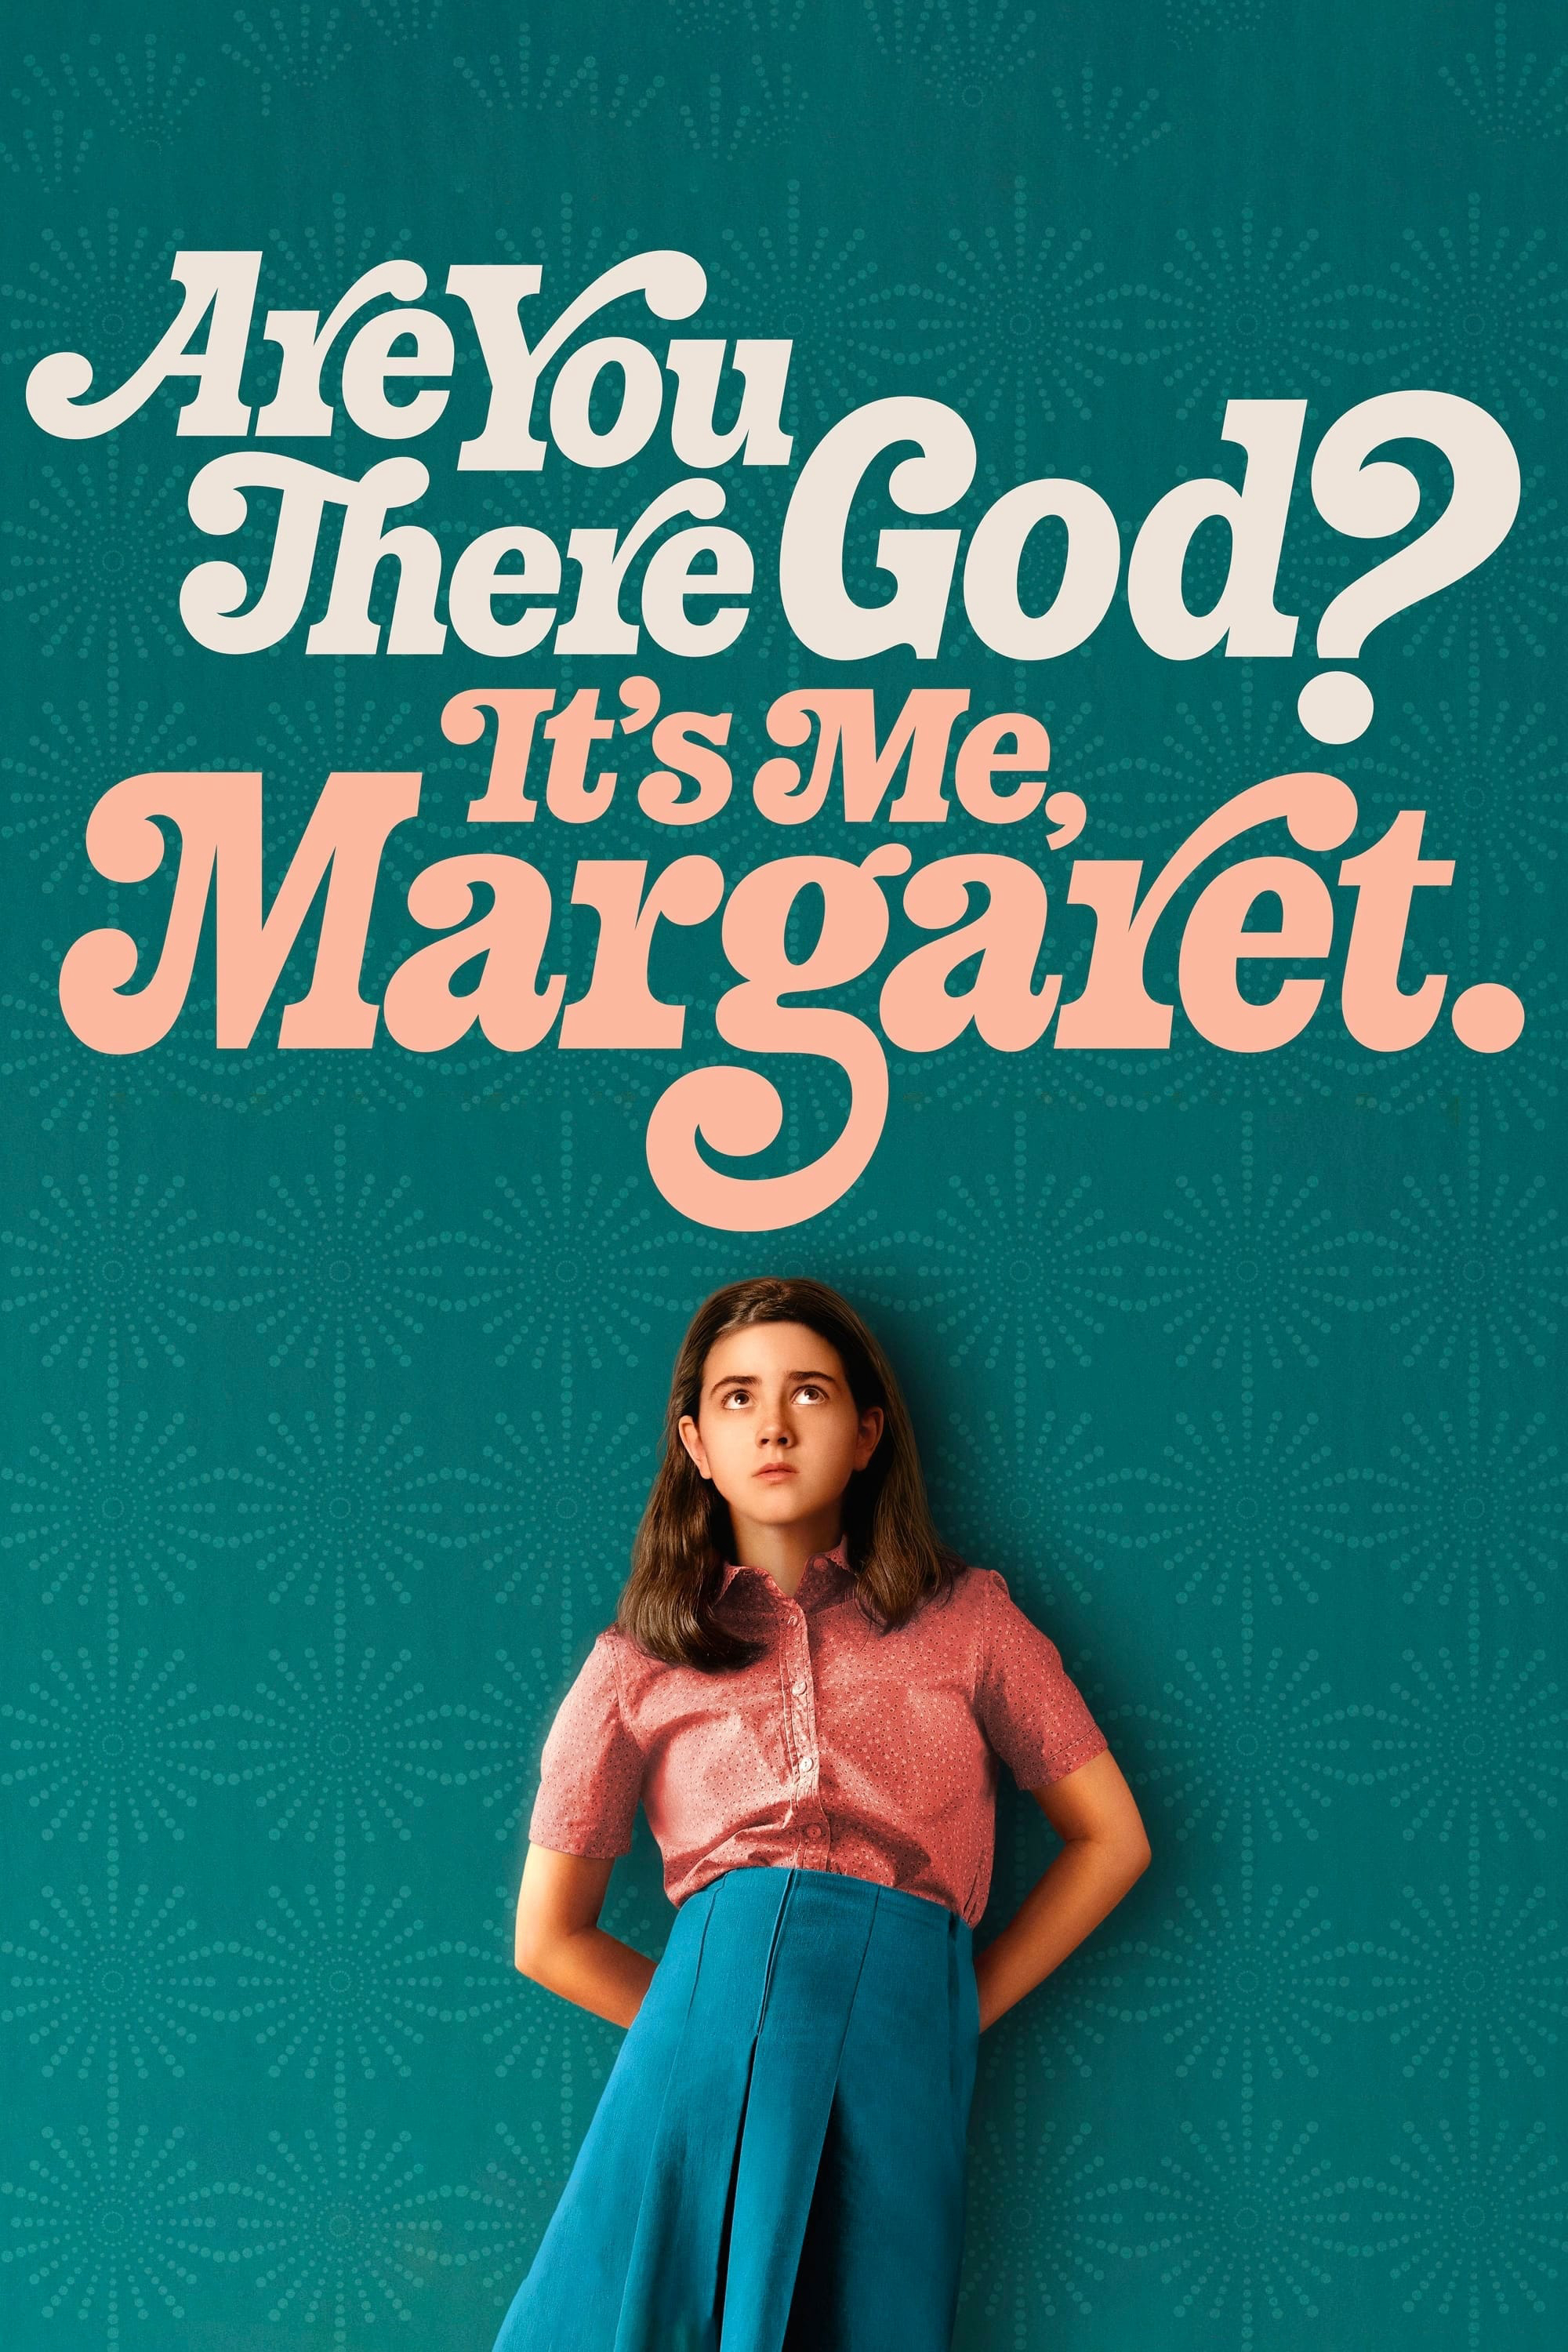 Chúa Có Ở Đó Không? Là Tôi, Margaret - Are You There God? It's Me, Margaret. (2023)